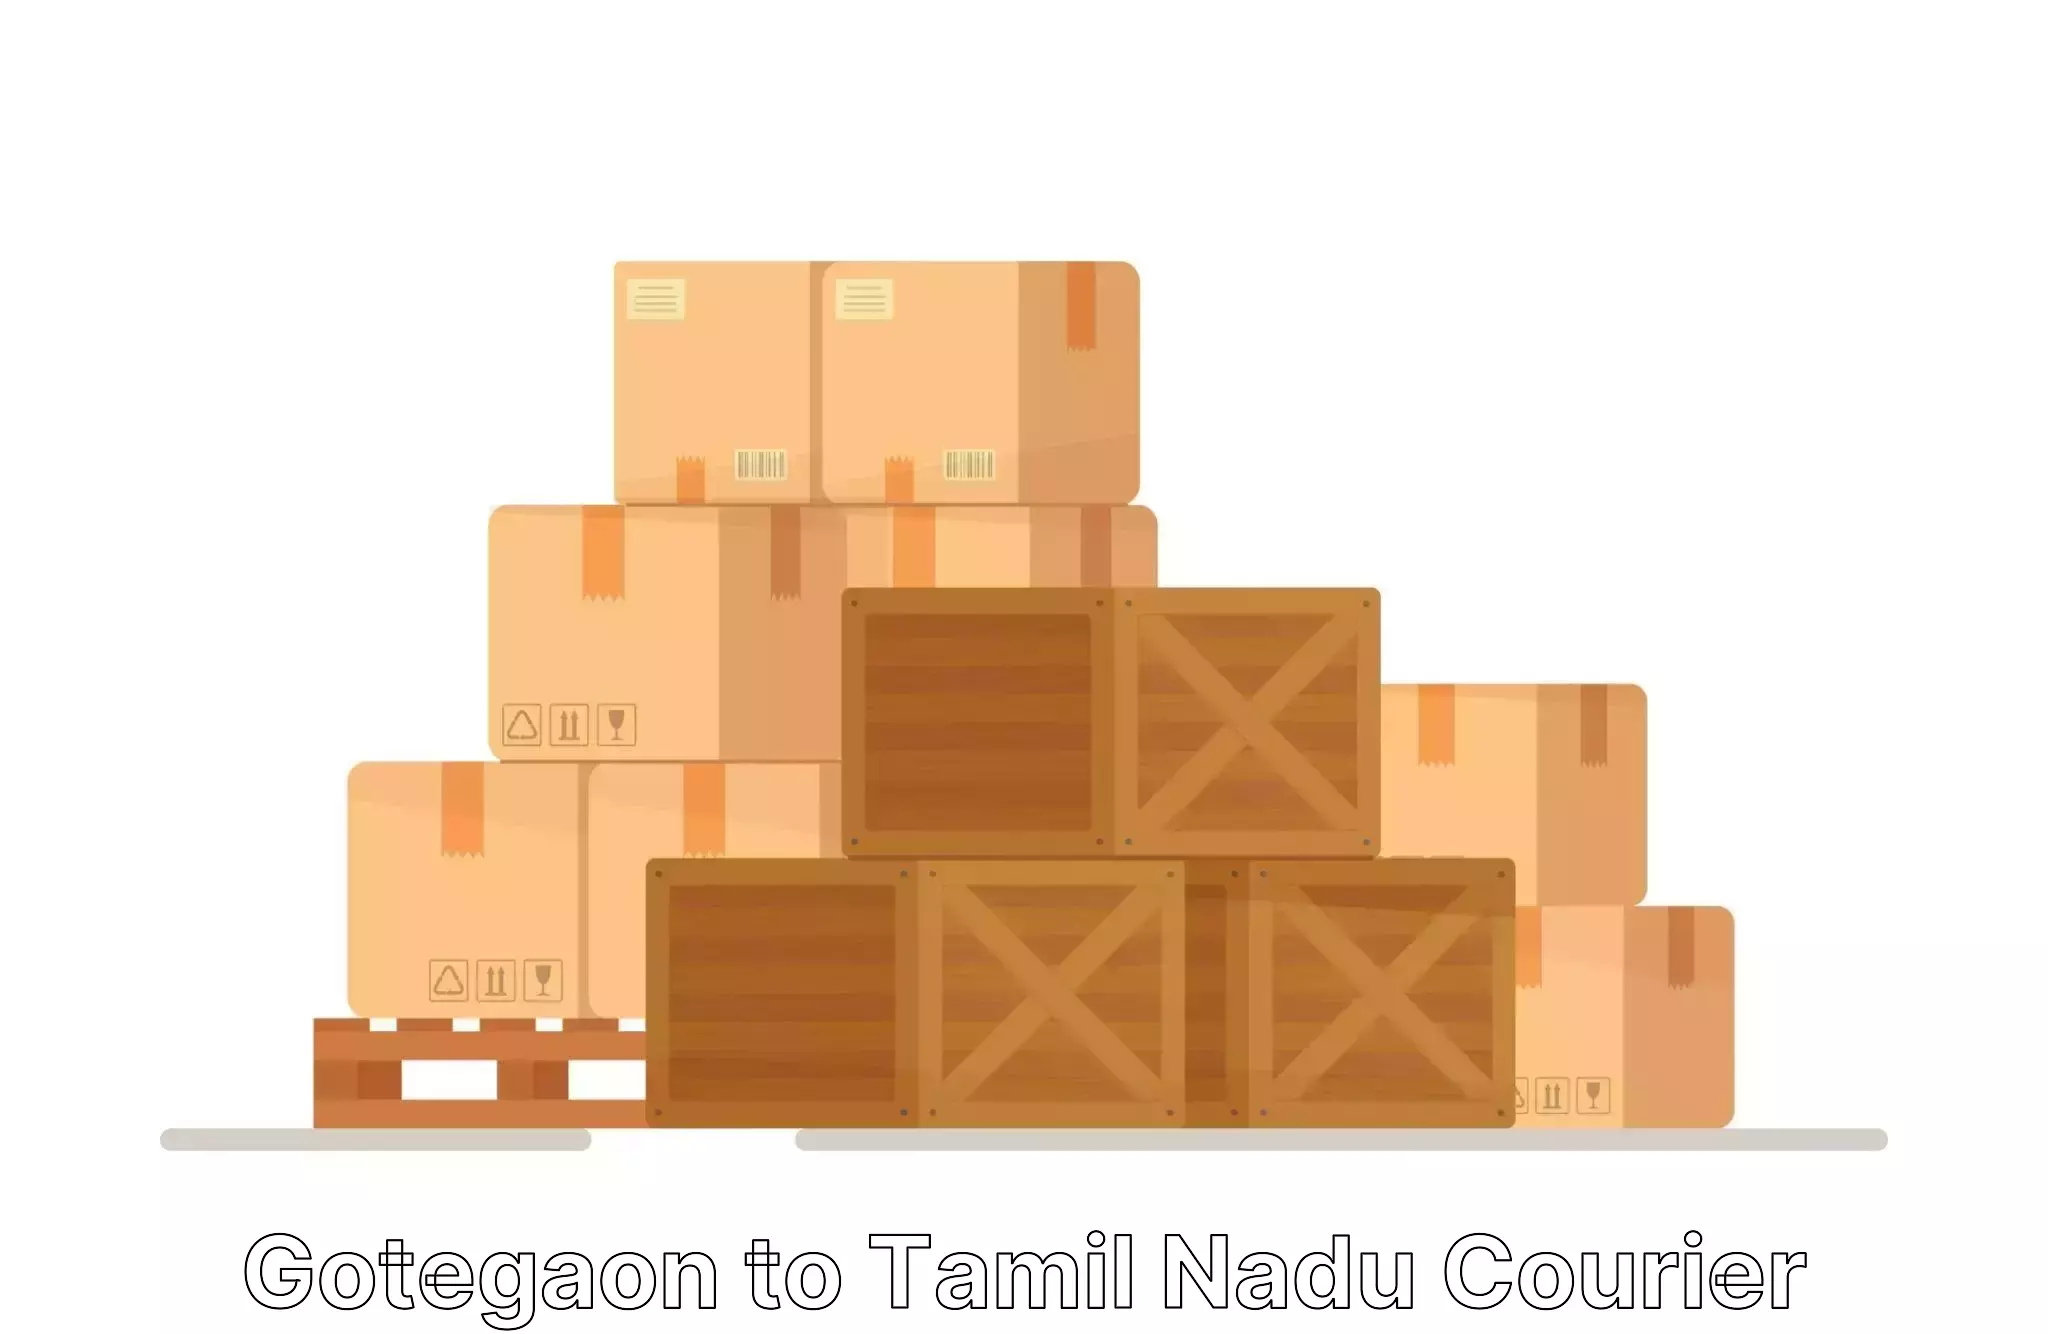 Furniture transport professionals Gotegaon to Tamil Nadu